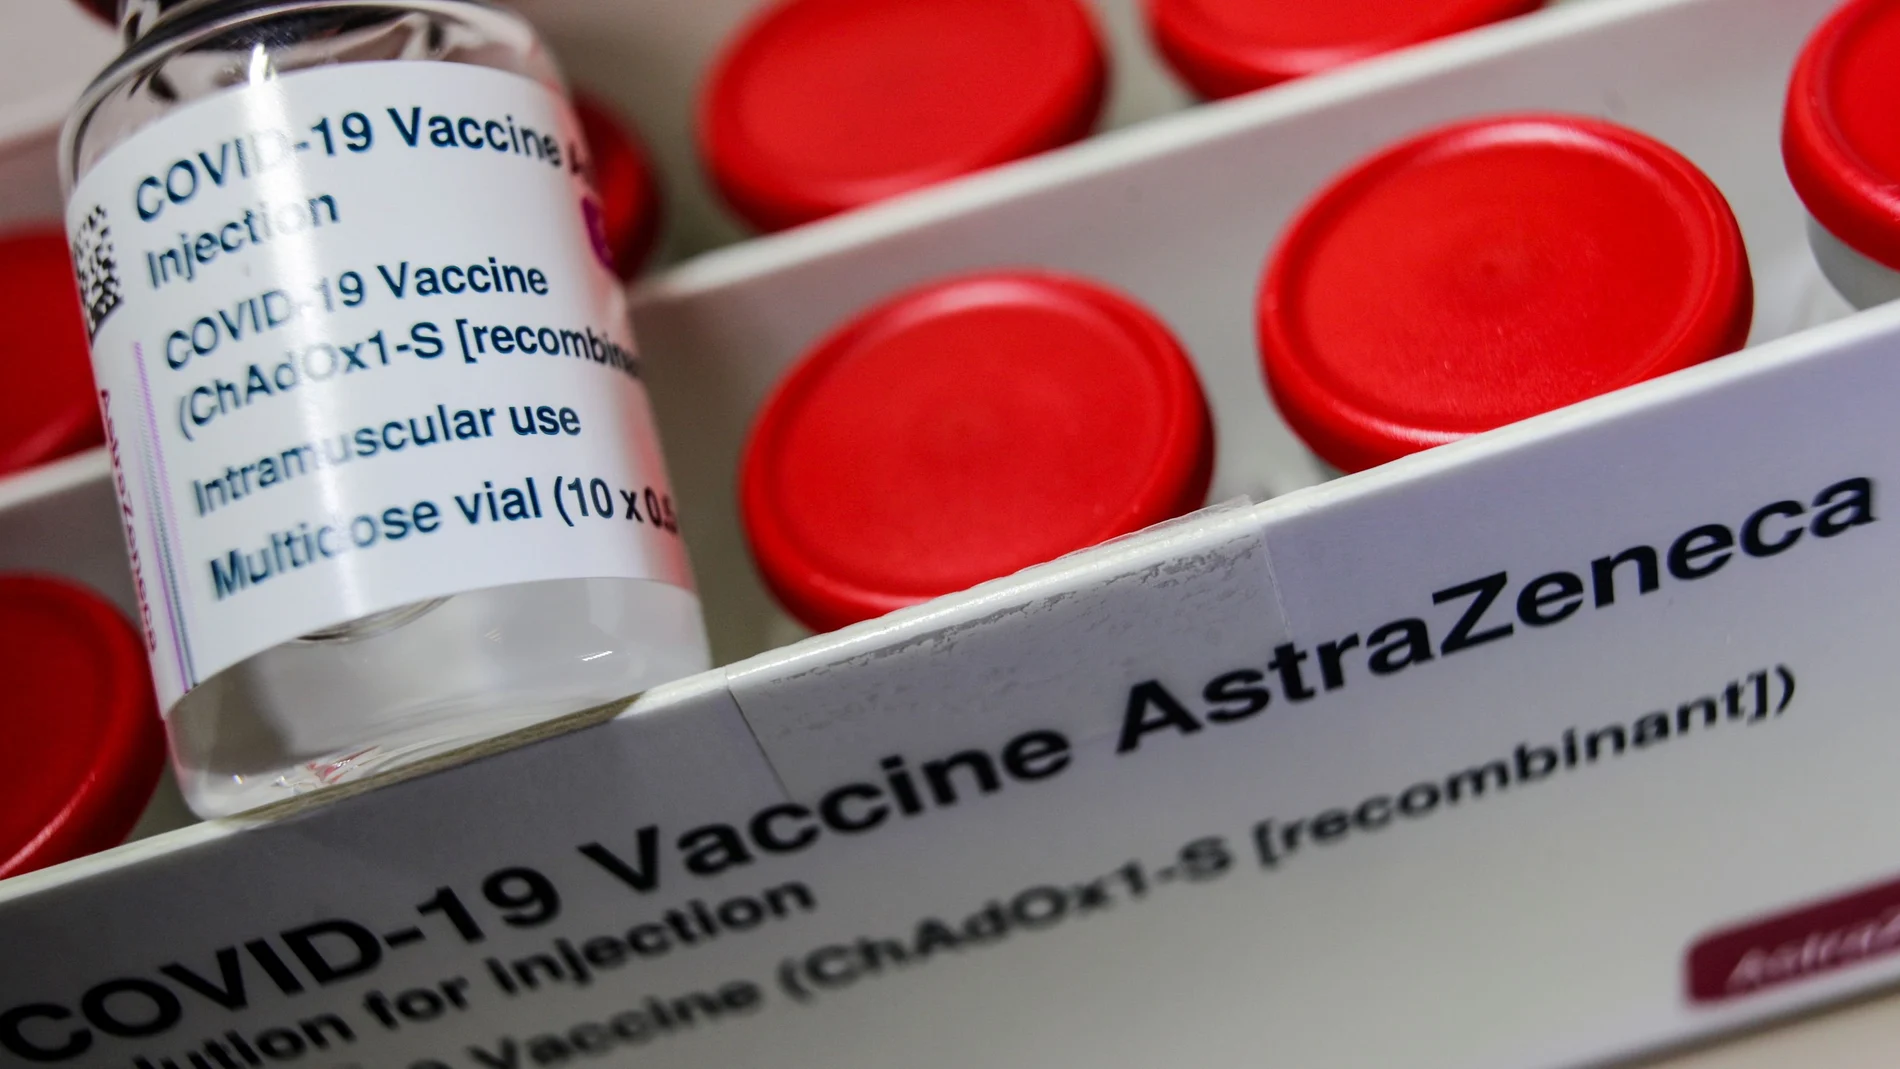 Imagen de uno de los viales del suero de AstraZeneca contra el coronavirus